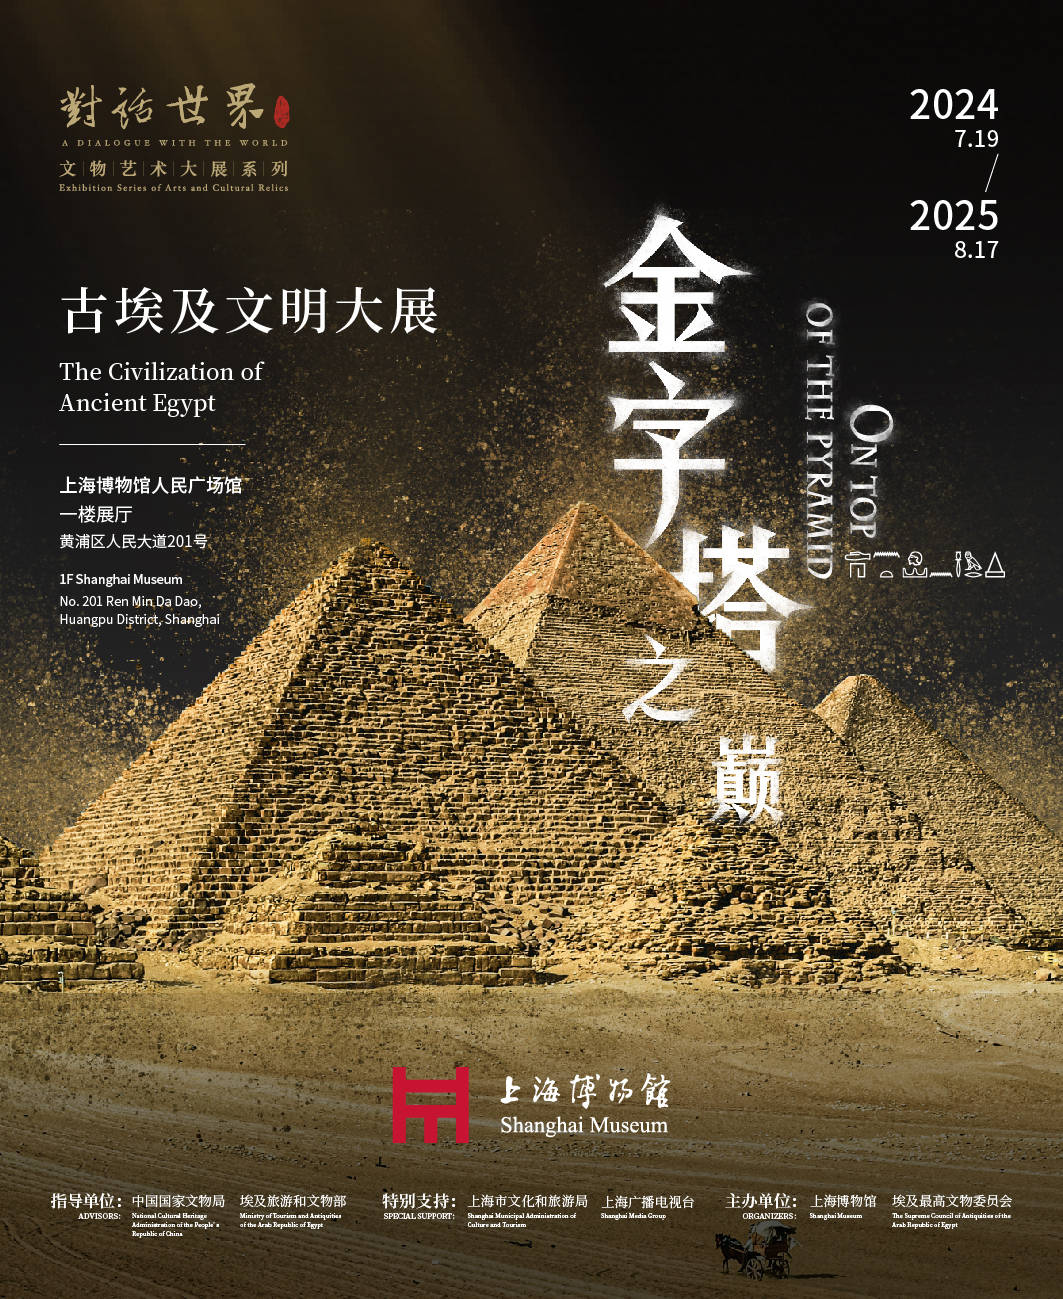   世界上最大的规模！“金字塔顶端:古埃及文明展”将于7月18日在上海举行。